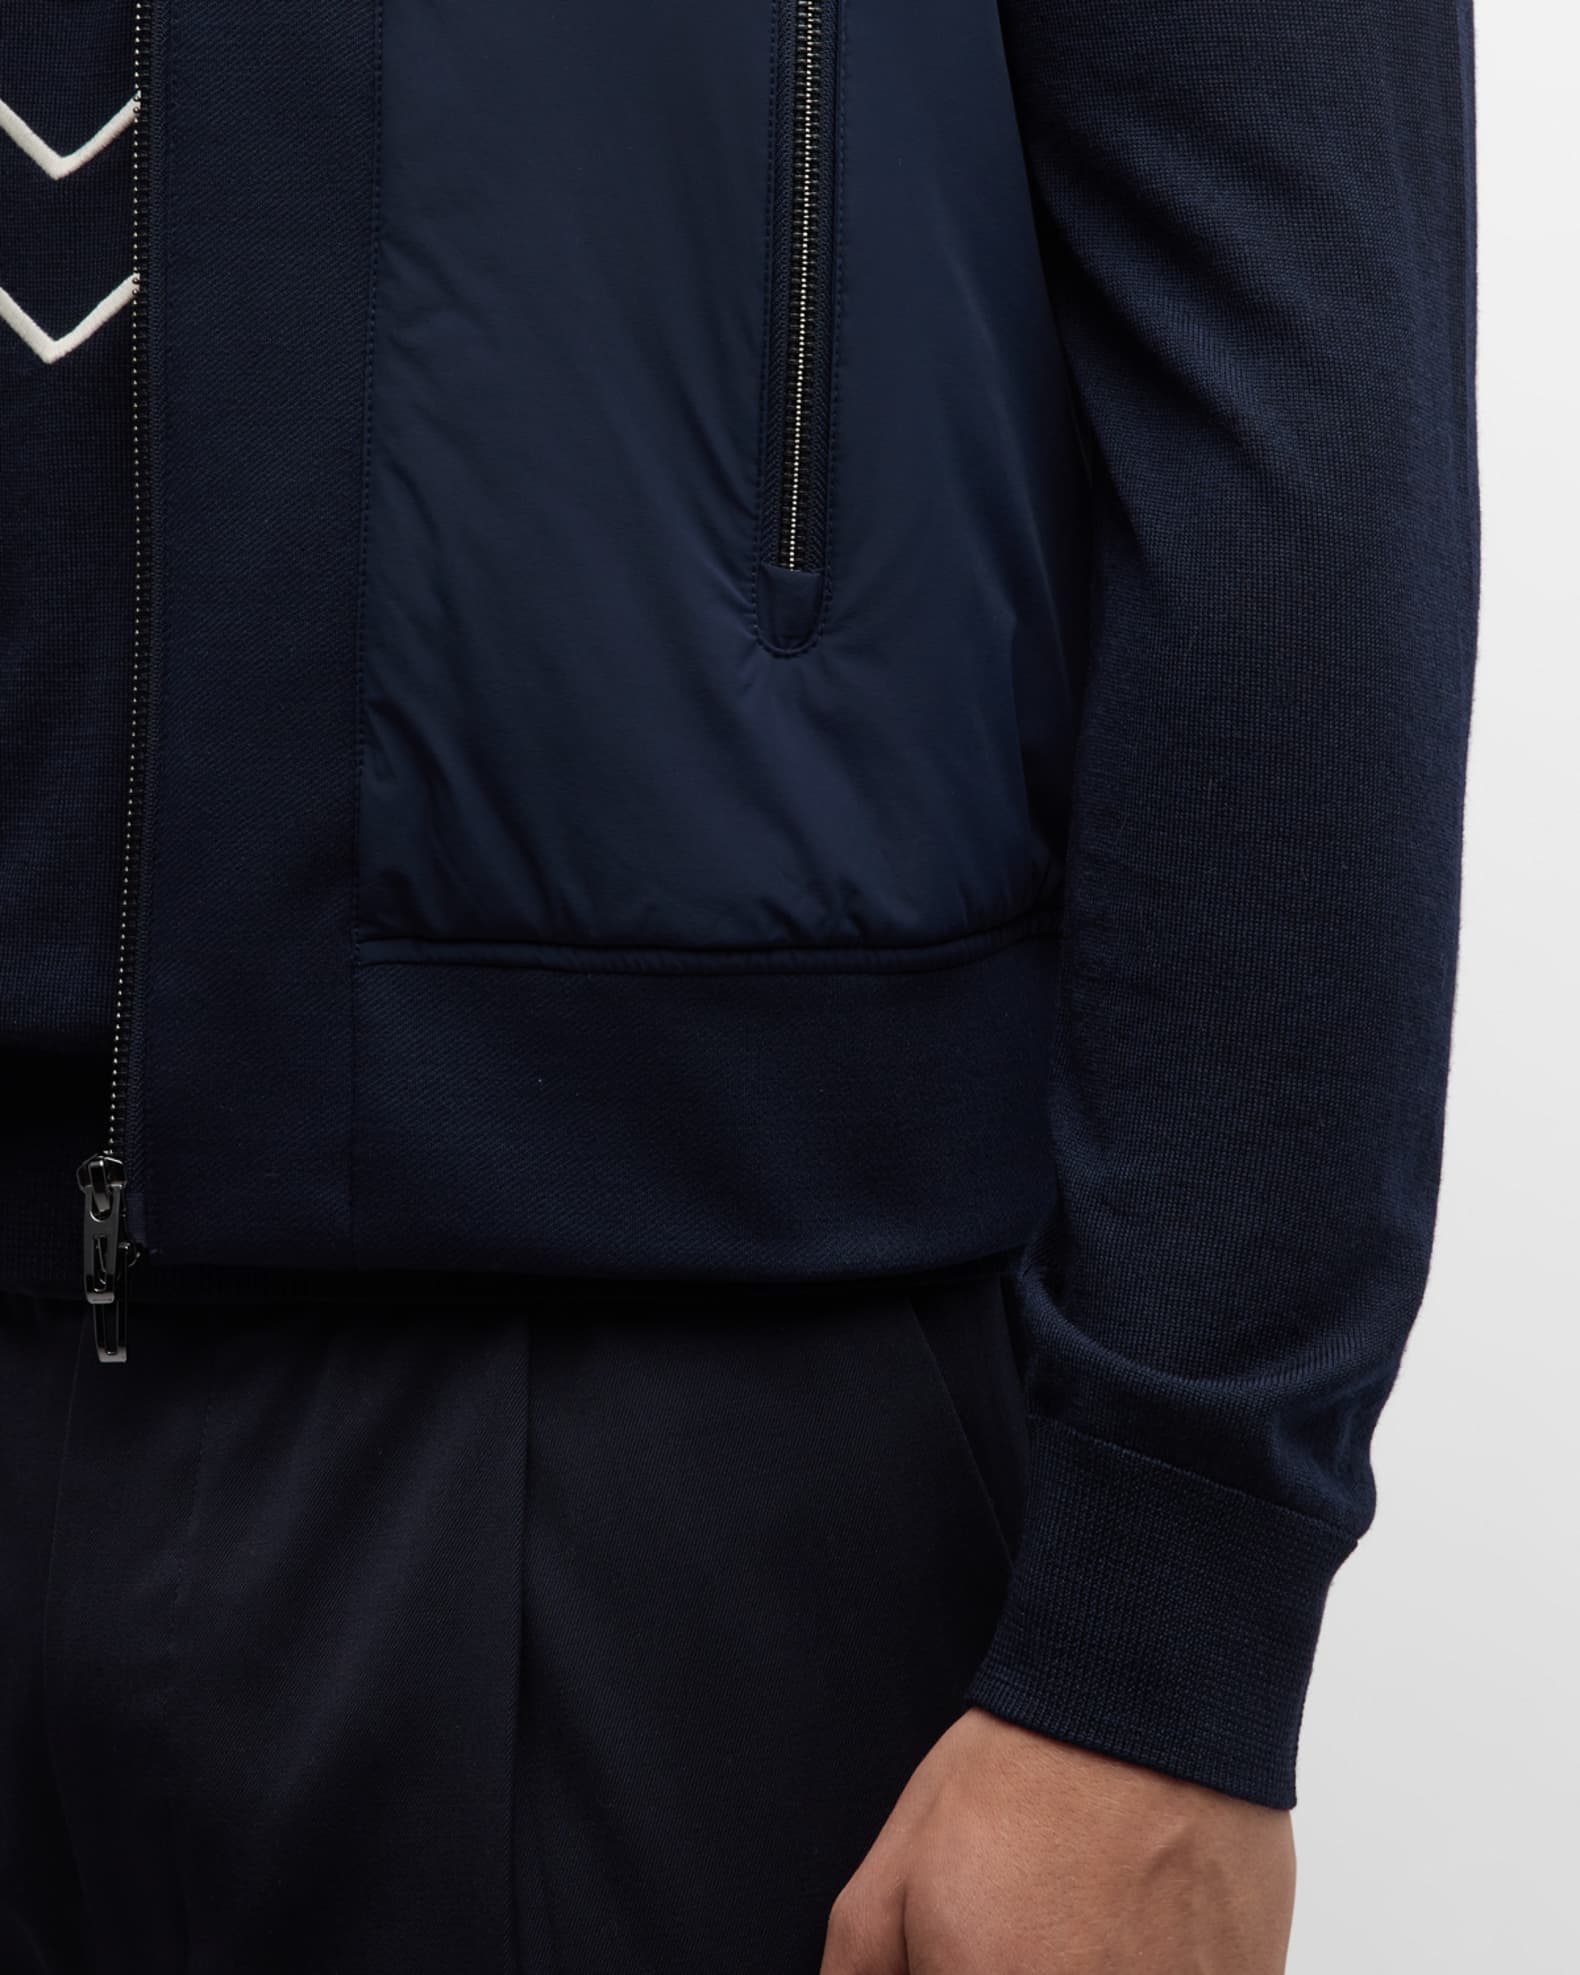 Emporio Armani Men's Solid Wool-Blend Zip Vest | Neiman Marcus